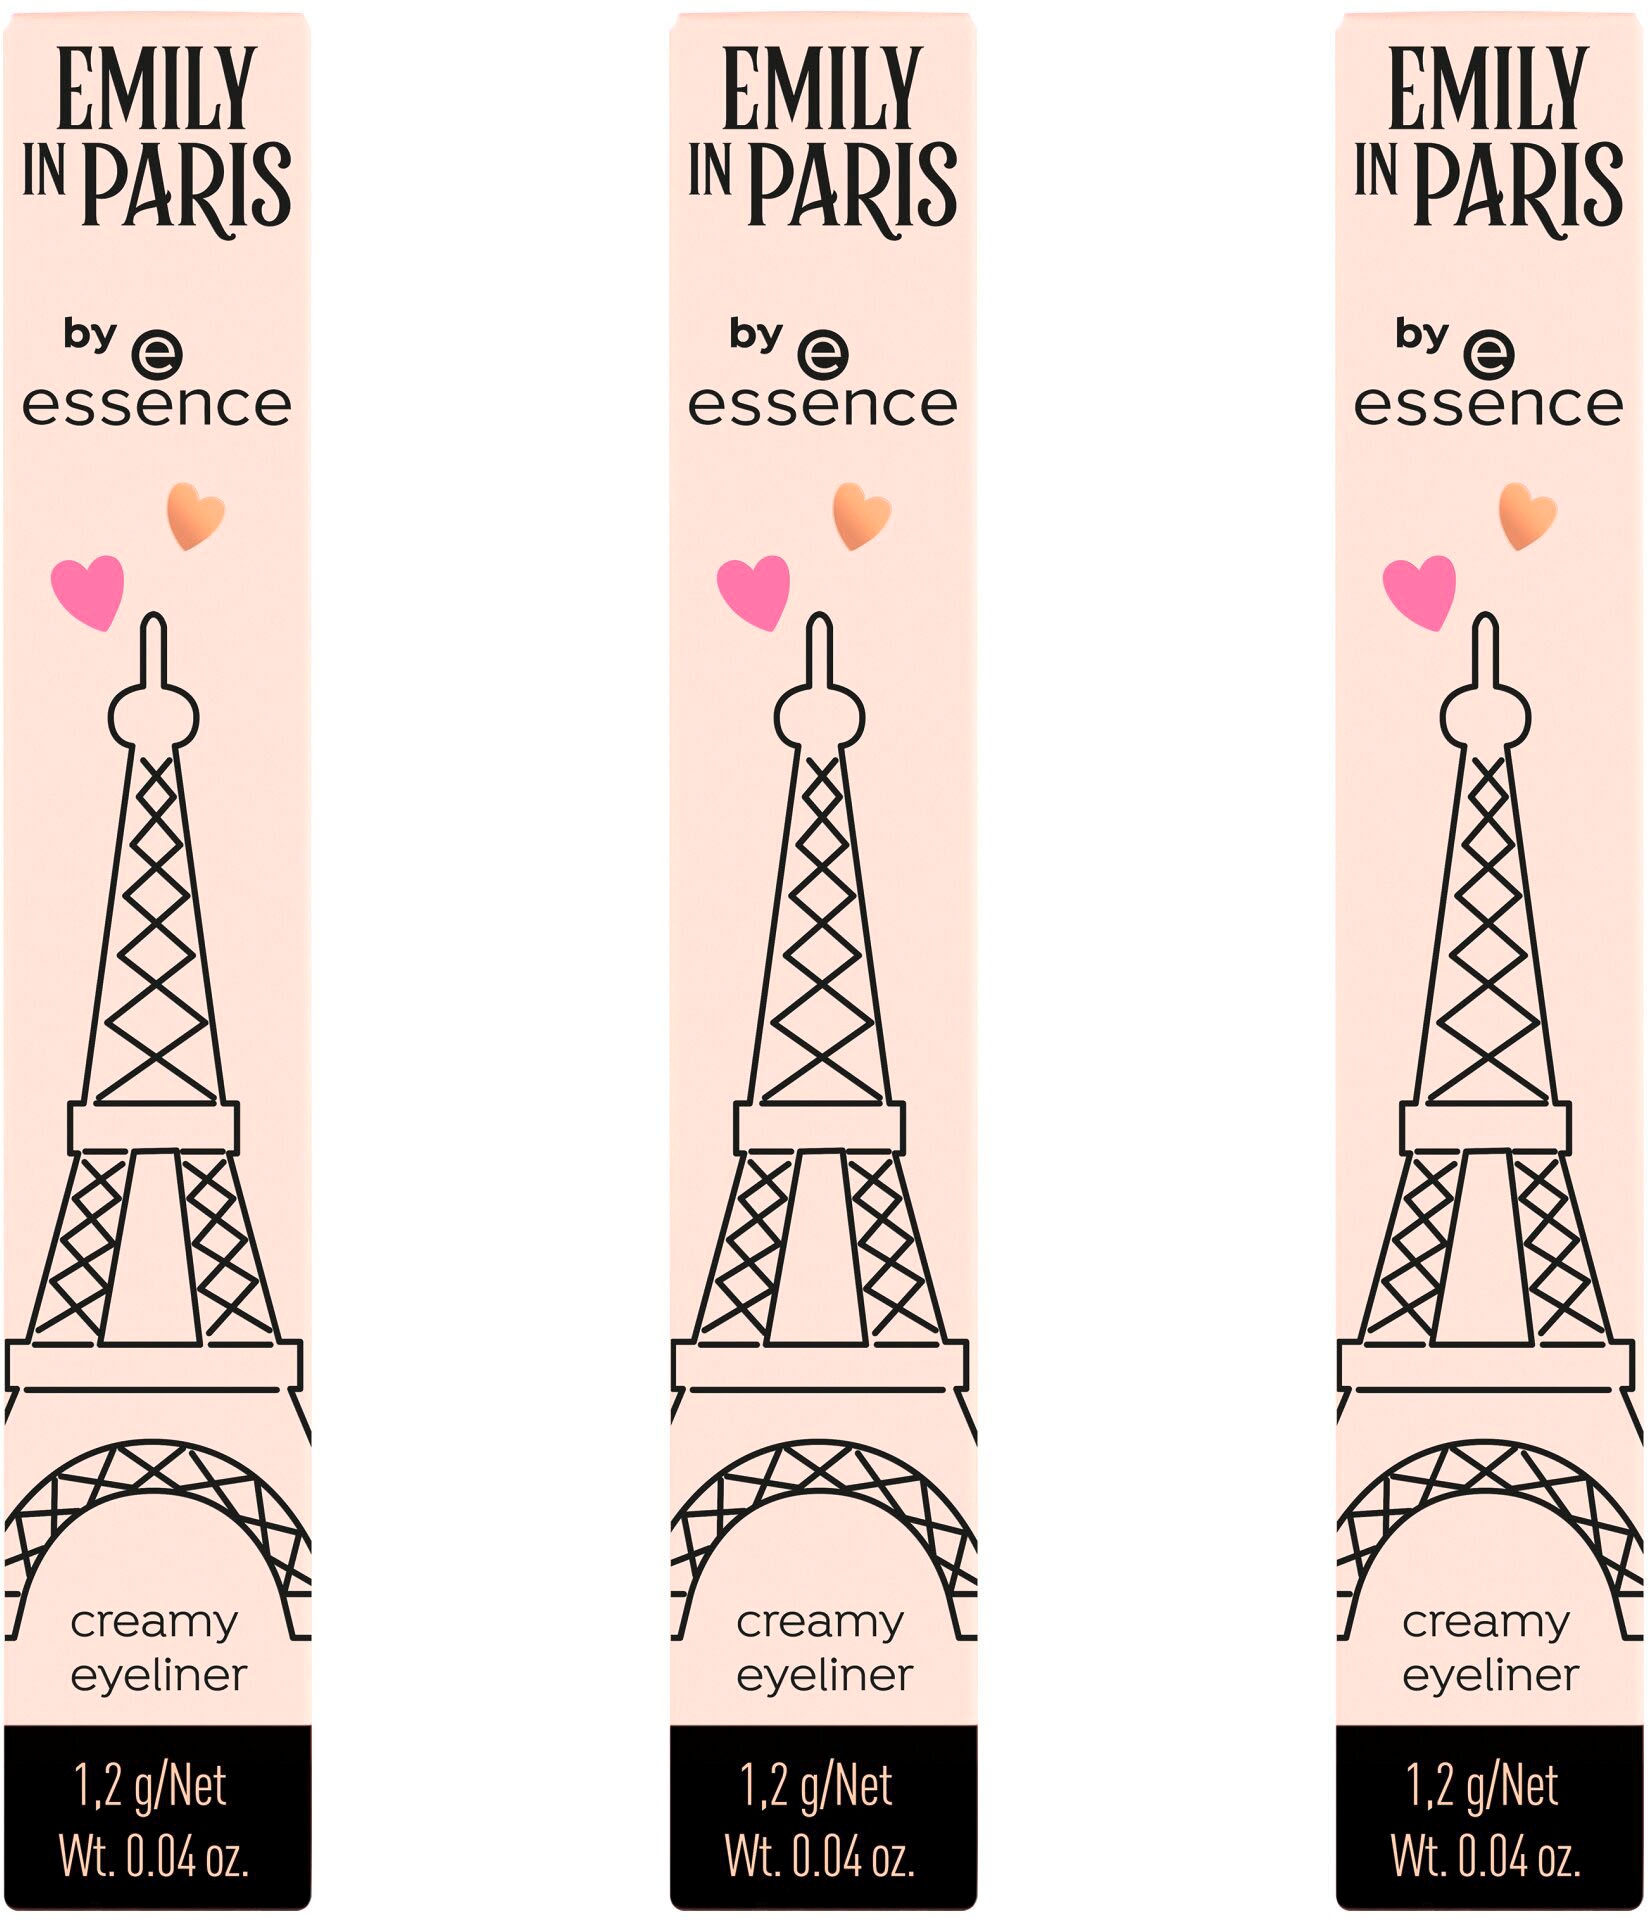 bei eyeliner«, »EMILY creamy Pinsel, mit PARIS Essence IN Augenkonturenstift vegan integriertem essence by Eyeliner OTTOversand